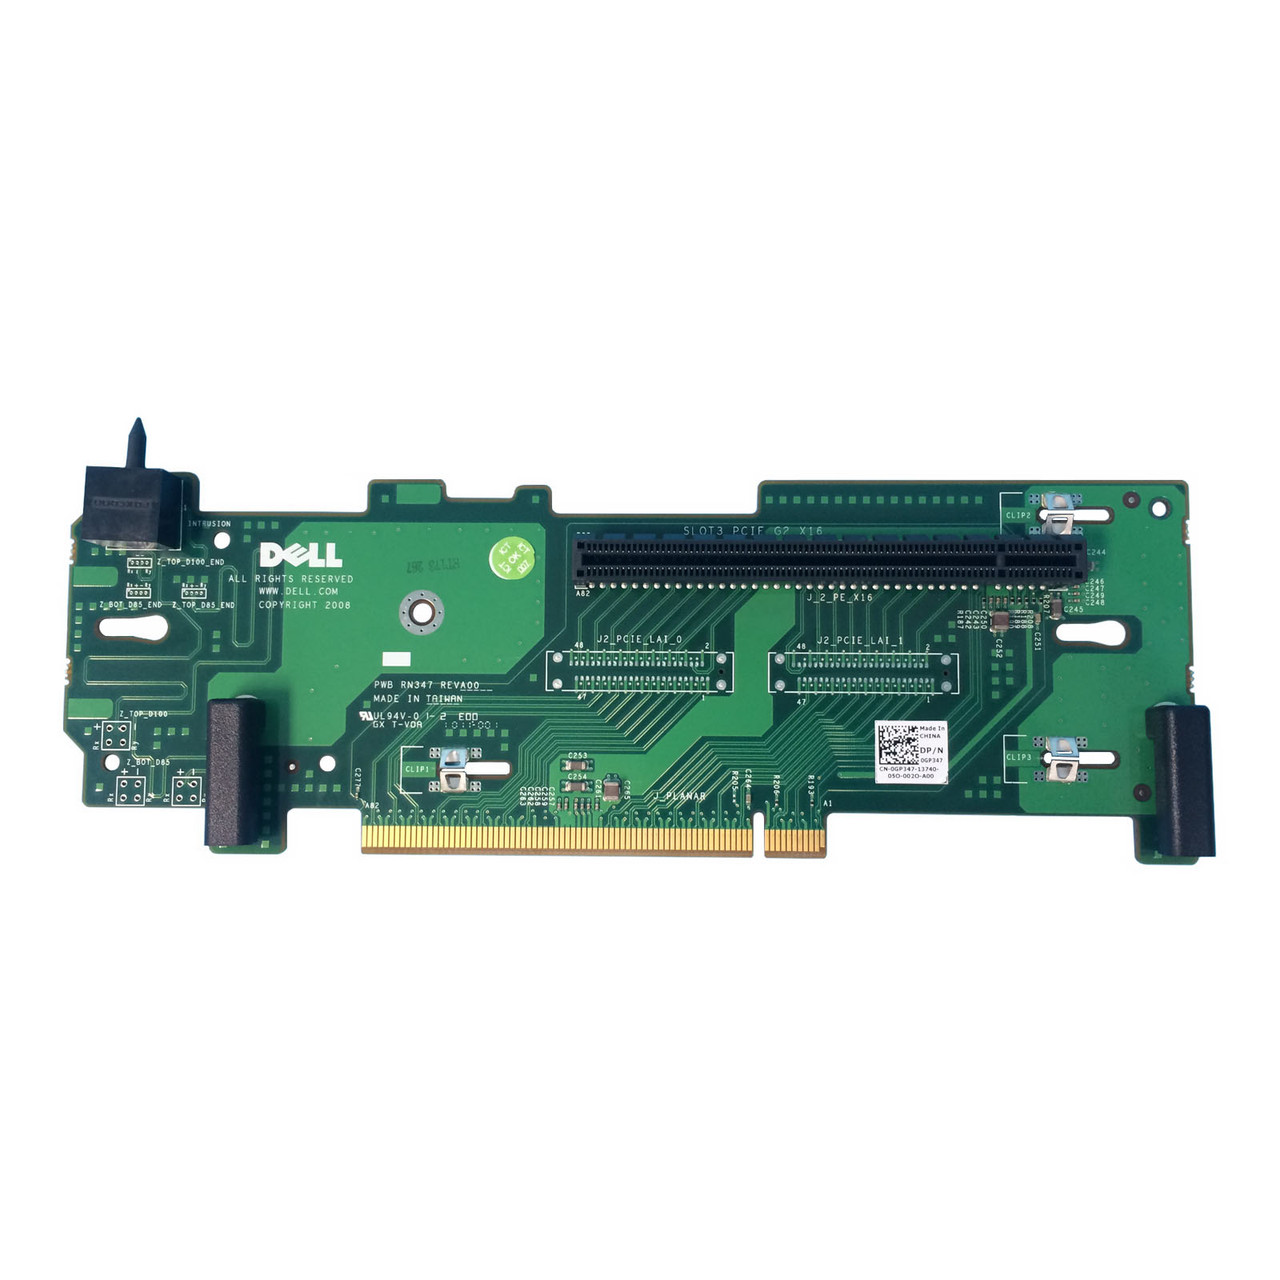 Dell GP347 Poweredge R710 PCIe x16 Riser Board RN347